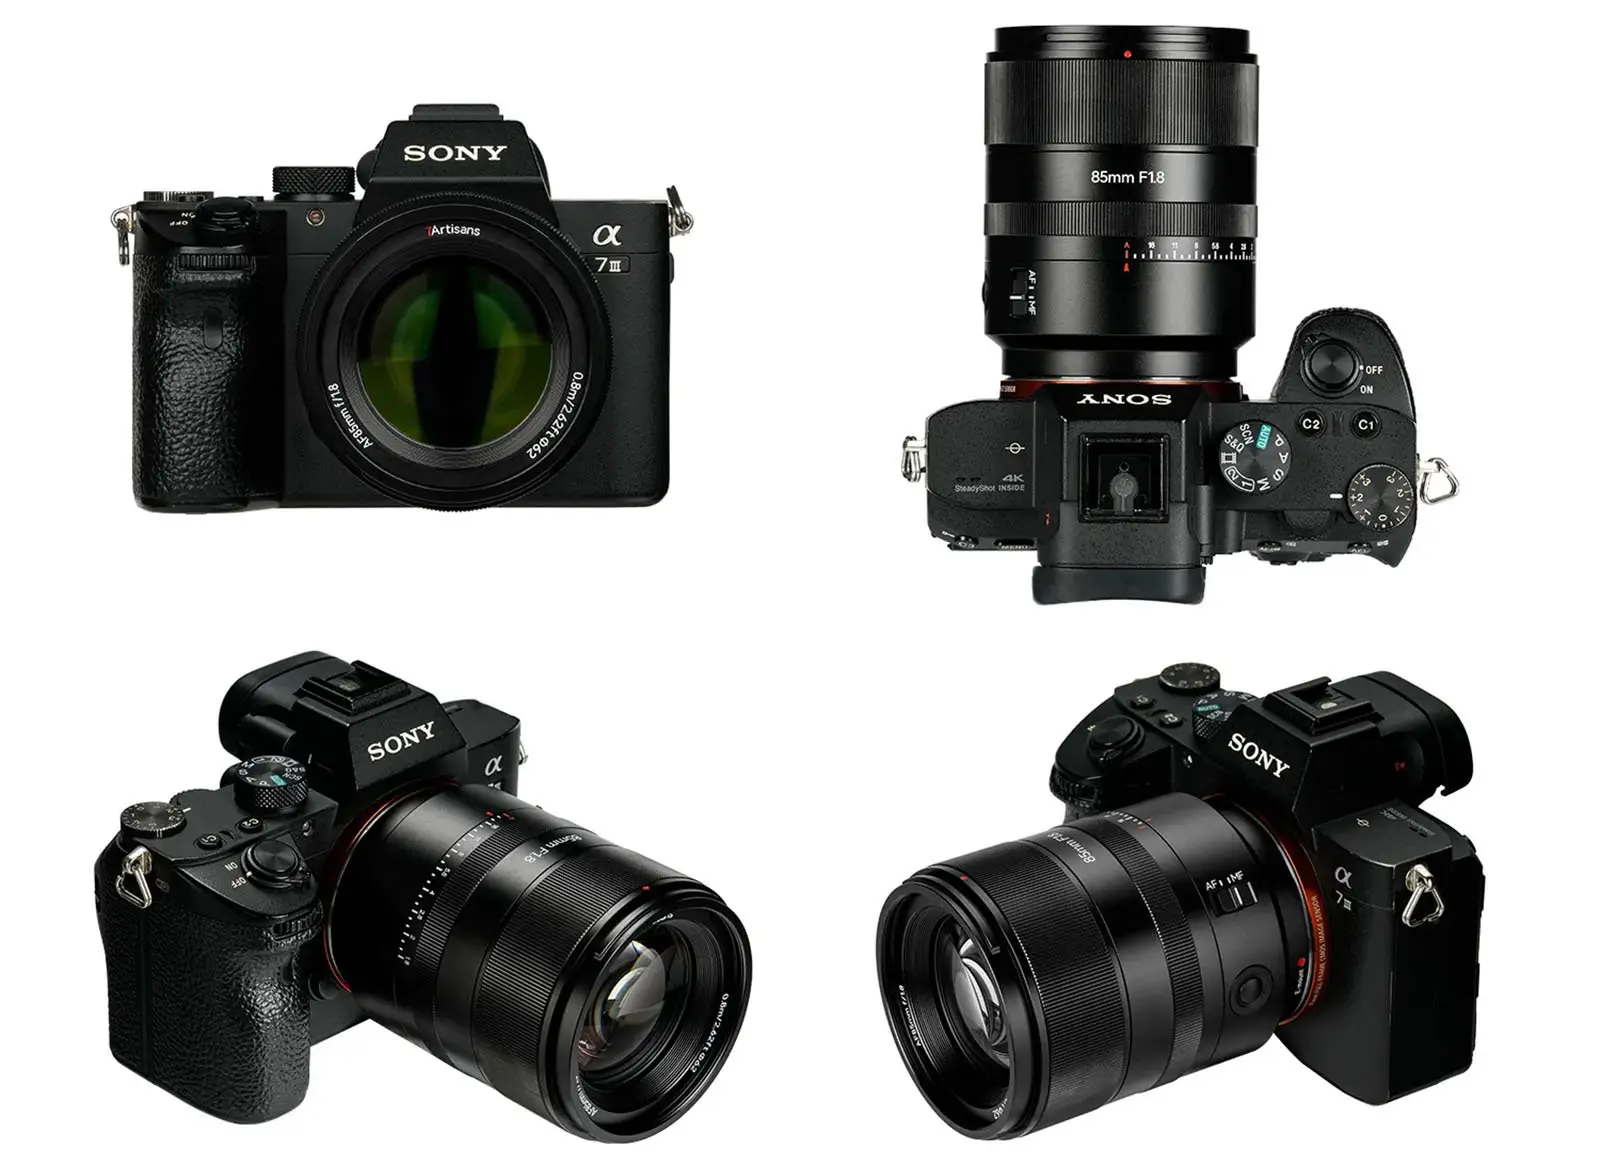 7Artisans ra mắt ống kính 7Artisans 85mm F1.8 AF cho máy ảnh Sony full frame